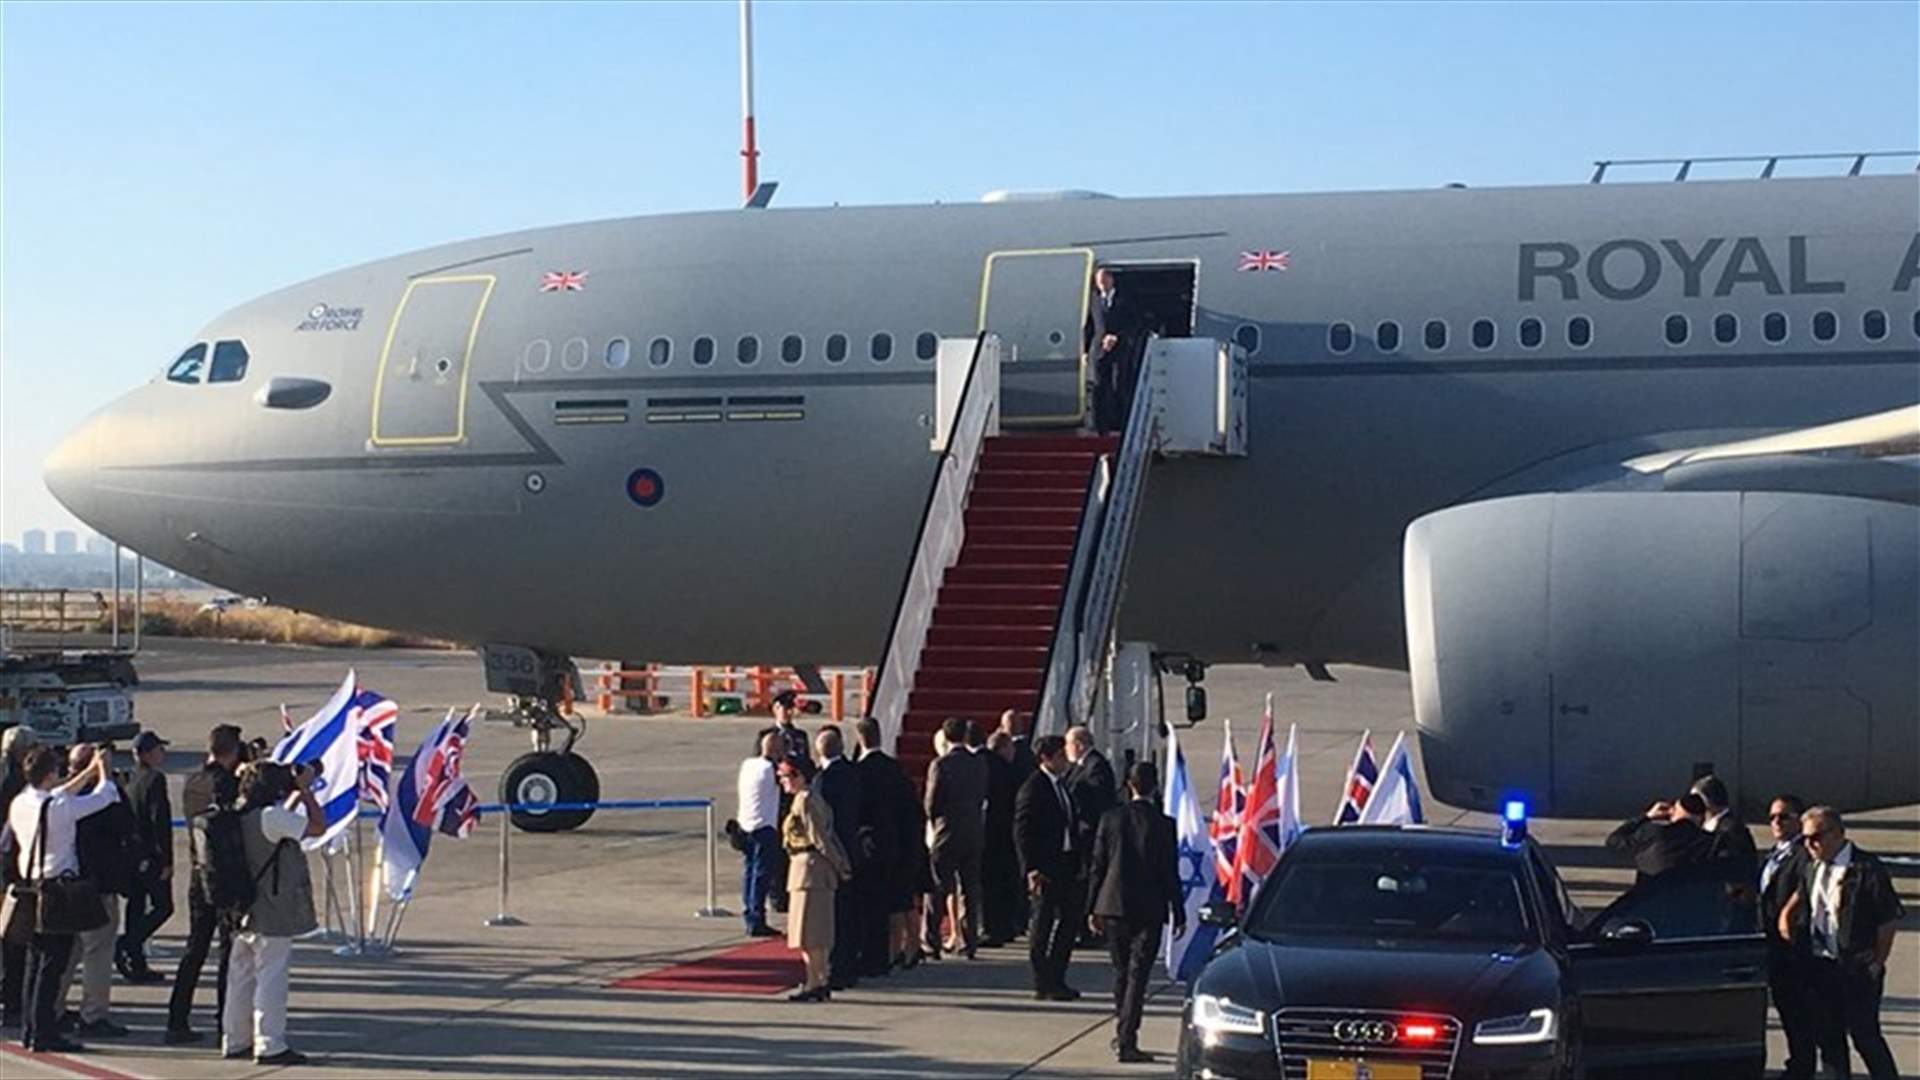 بالفيديو والصور - الأمير وليام في تل أبيب في أول زيارة رسمية للعائلة المالكة البريطانية لإسرائيل